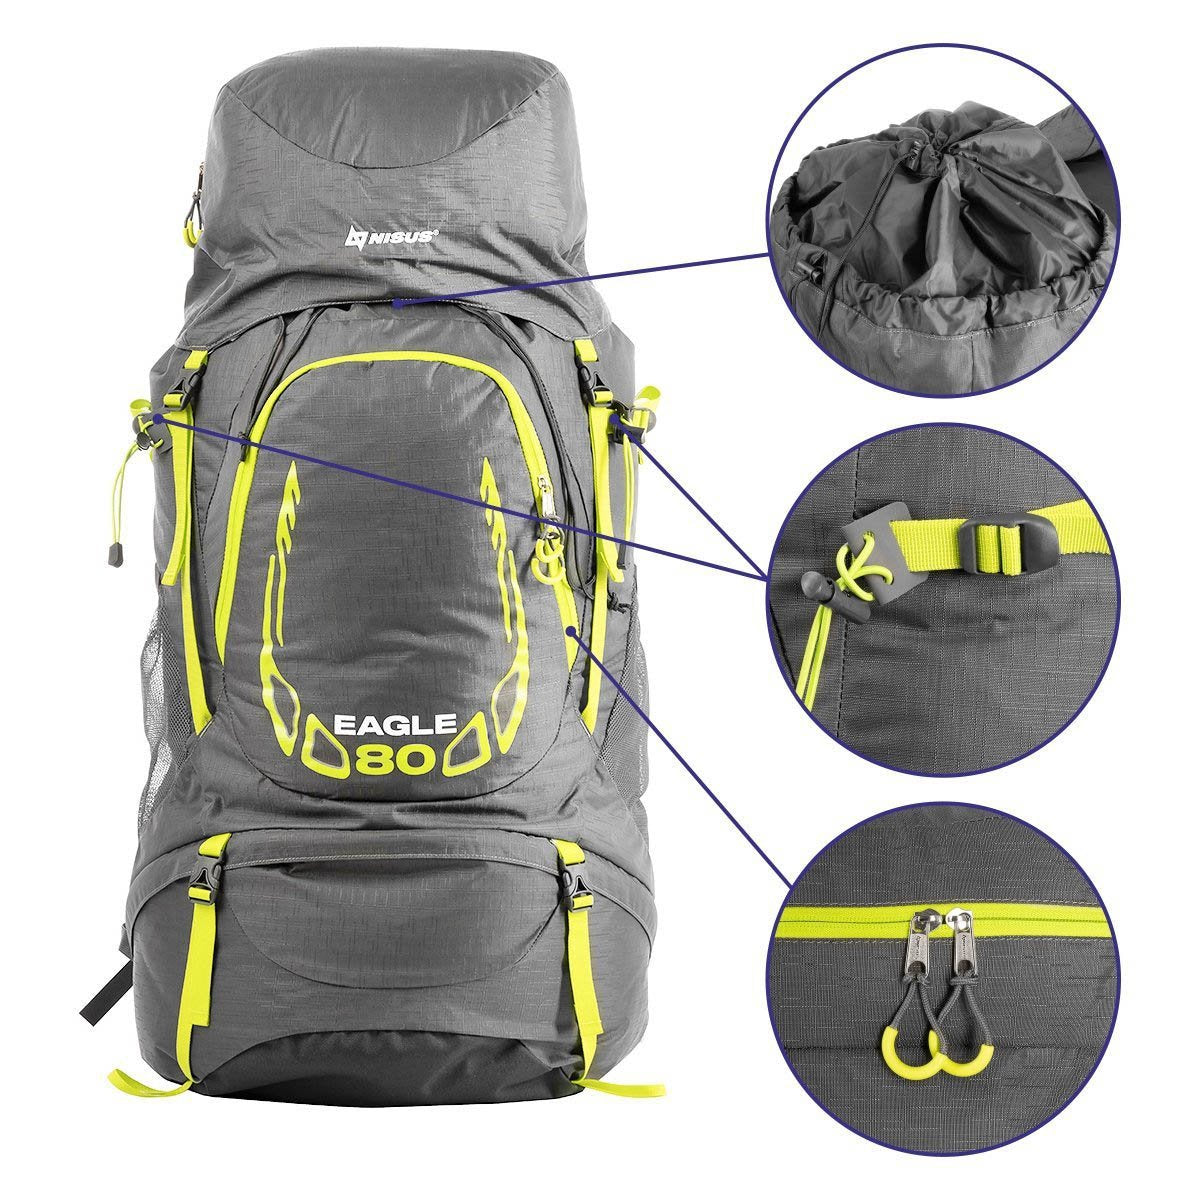 80 Liter Internal Frame Hiking Backpack